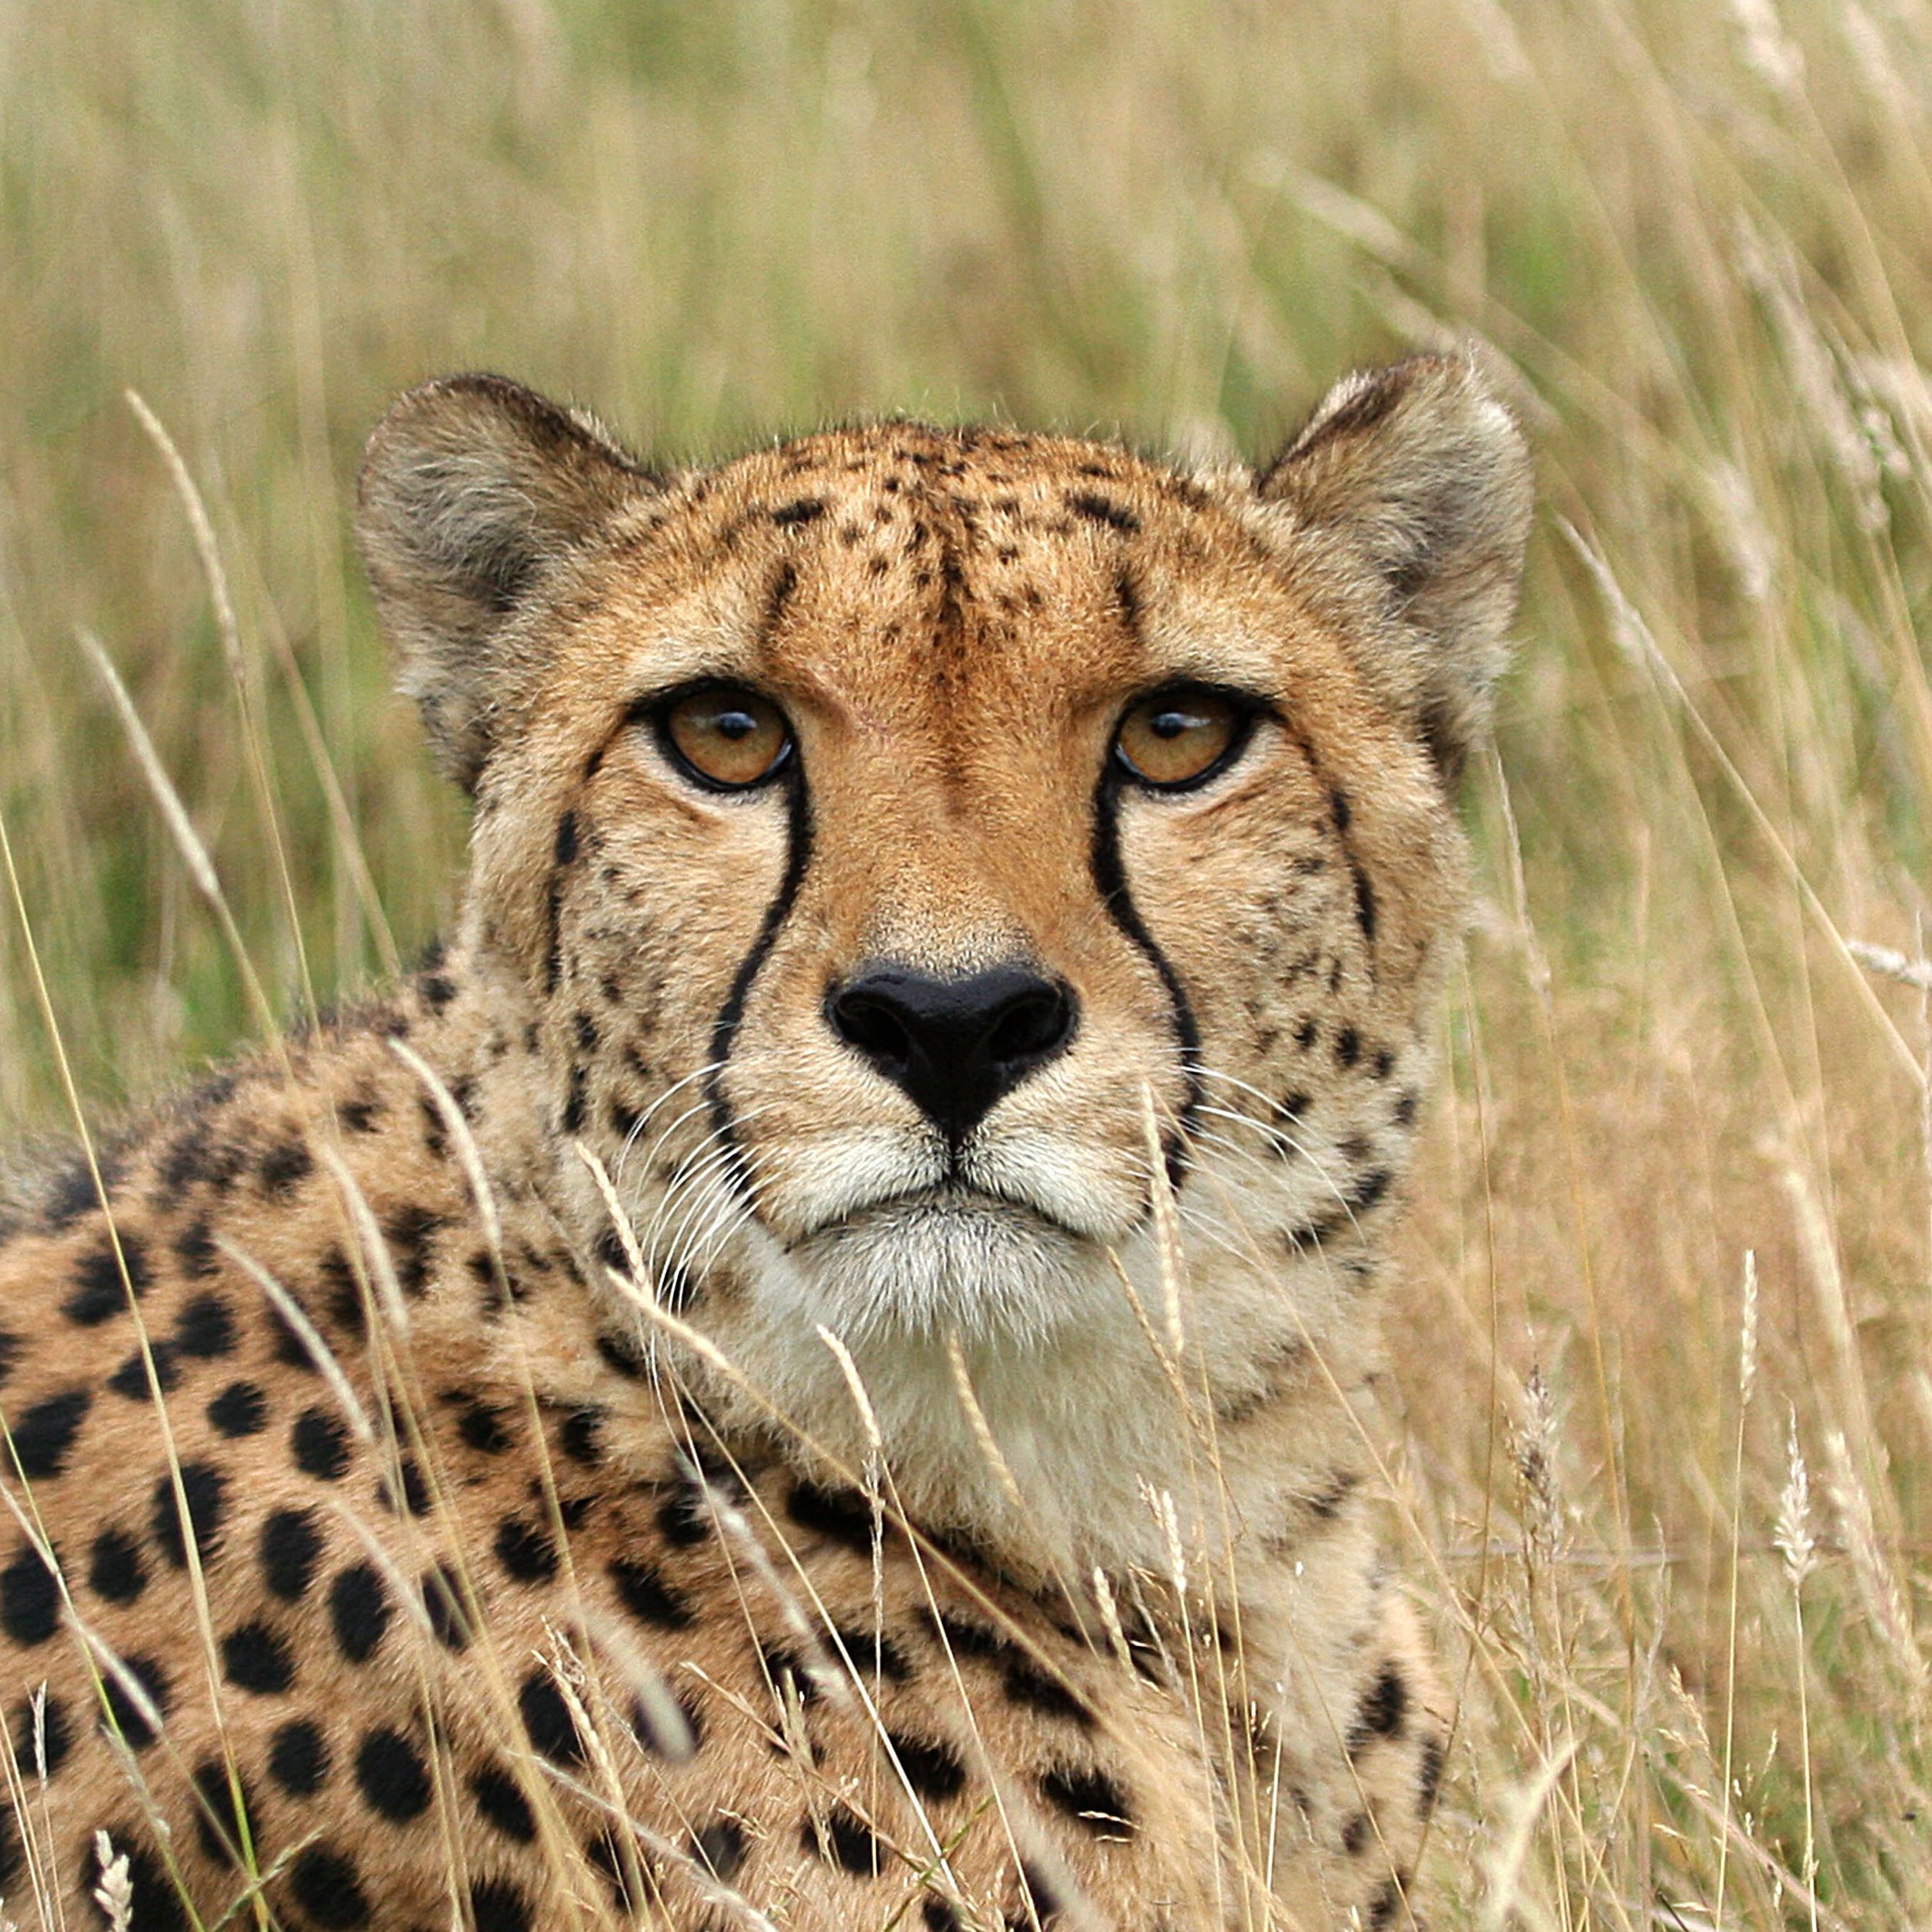 Cheetah Through the Grass